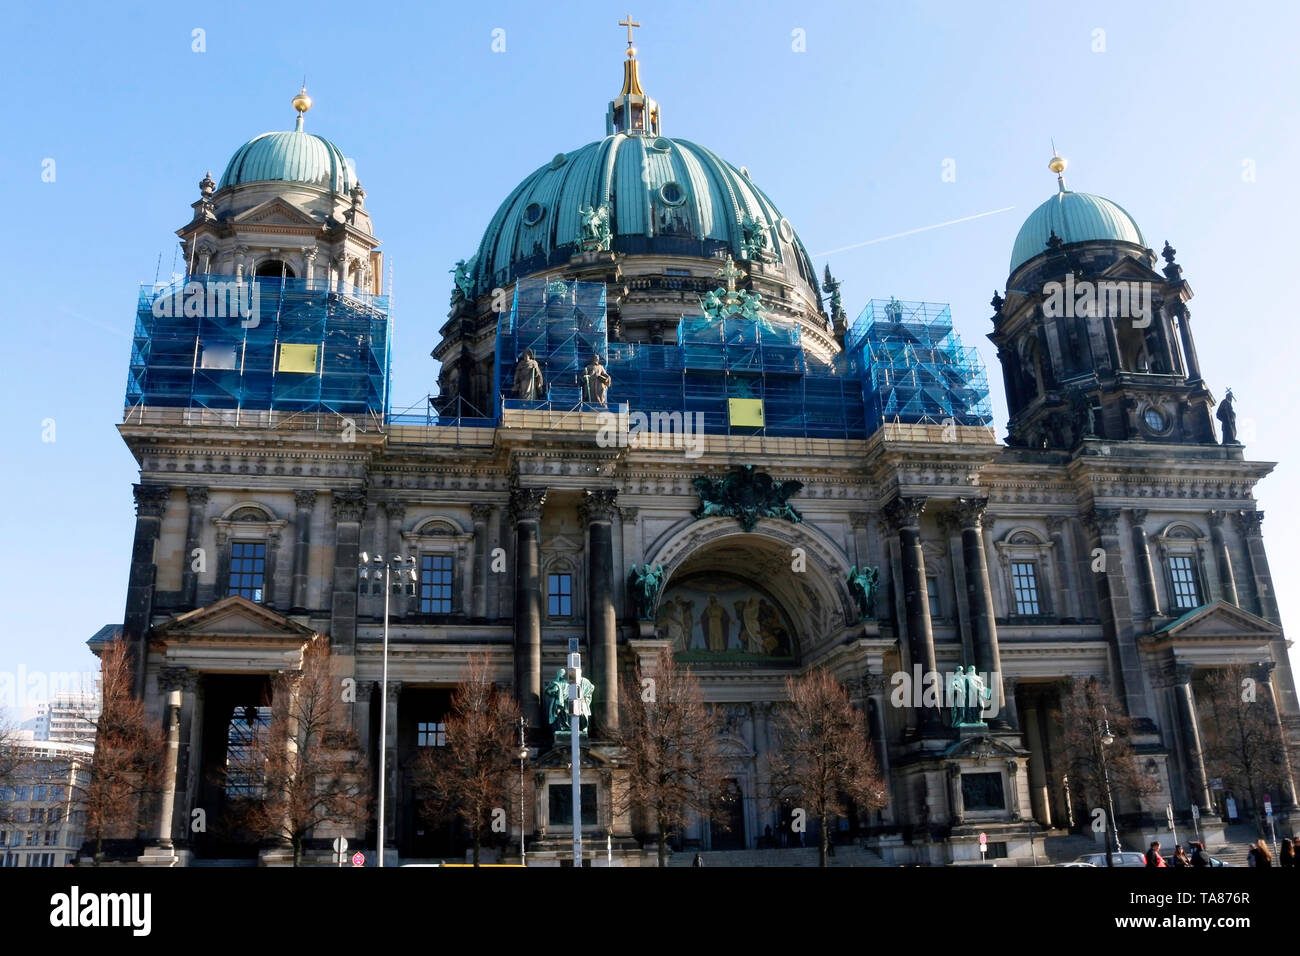 Berliner Dom - Berlín es hoy una ciudad muy interesante e inspirador. Su mezcla de historia, arte, expresión, creatividad y modernidad om lo hacen único. Foto de stock